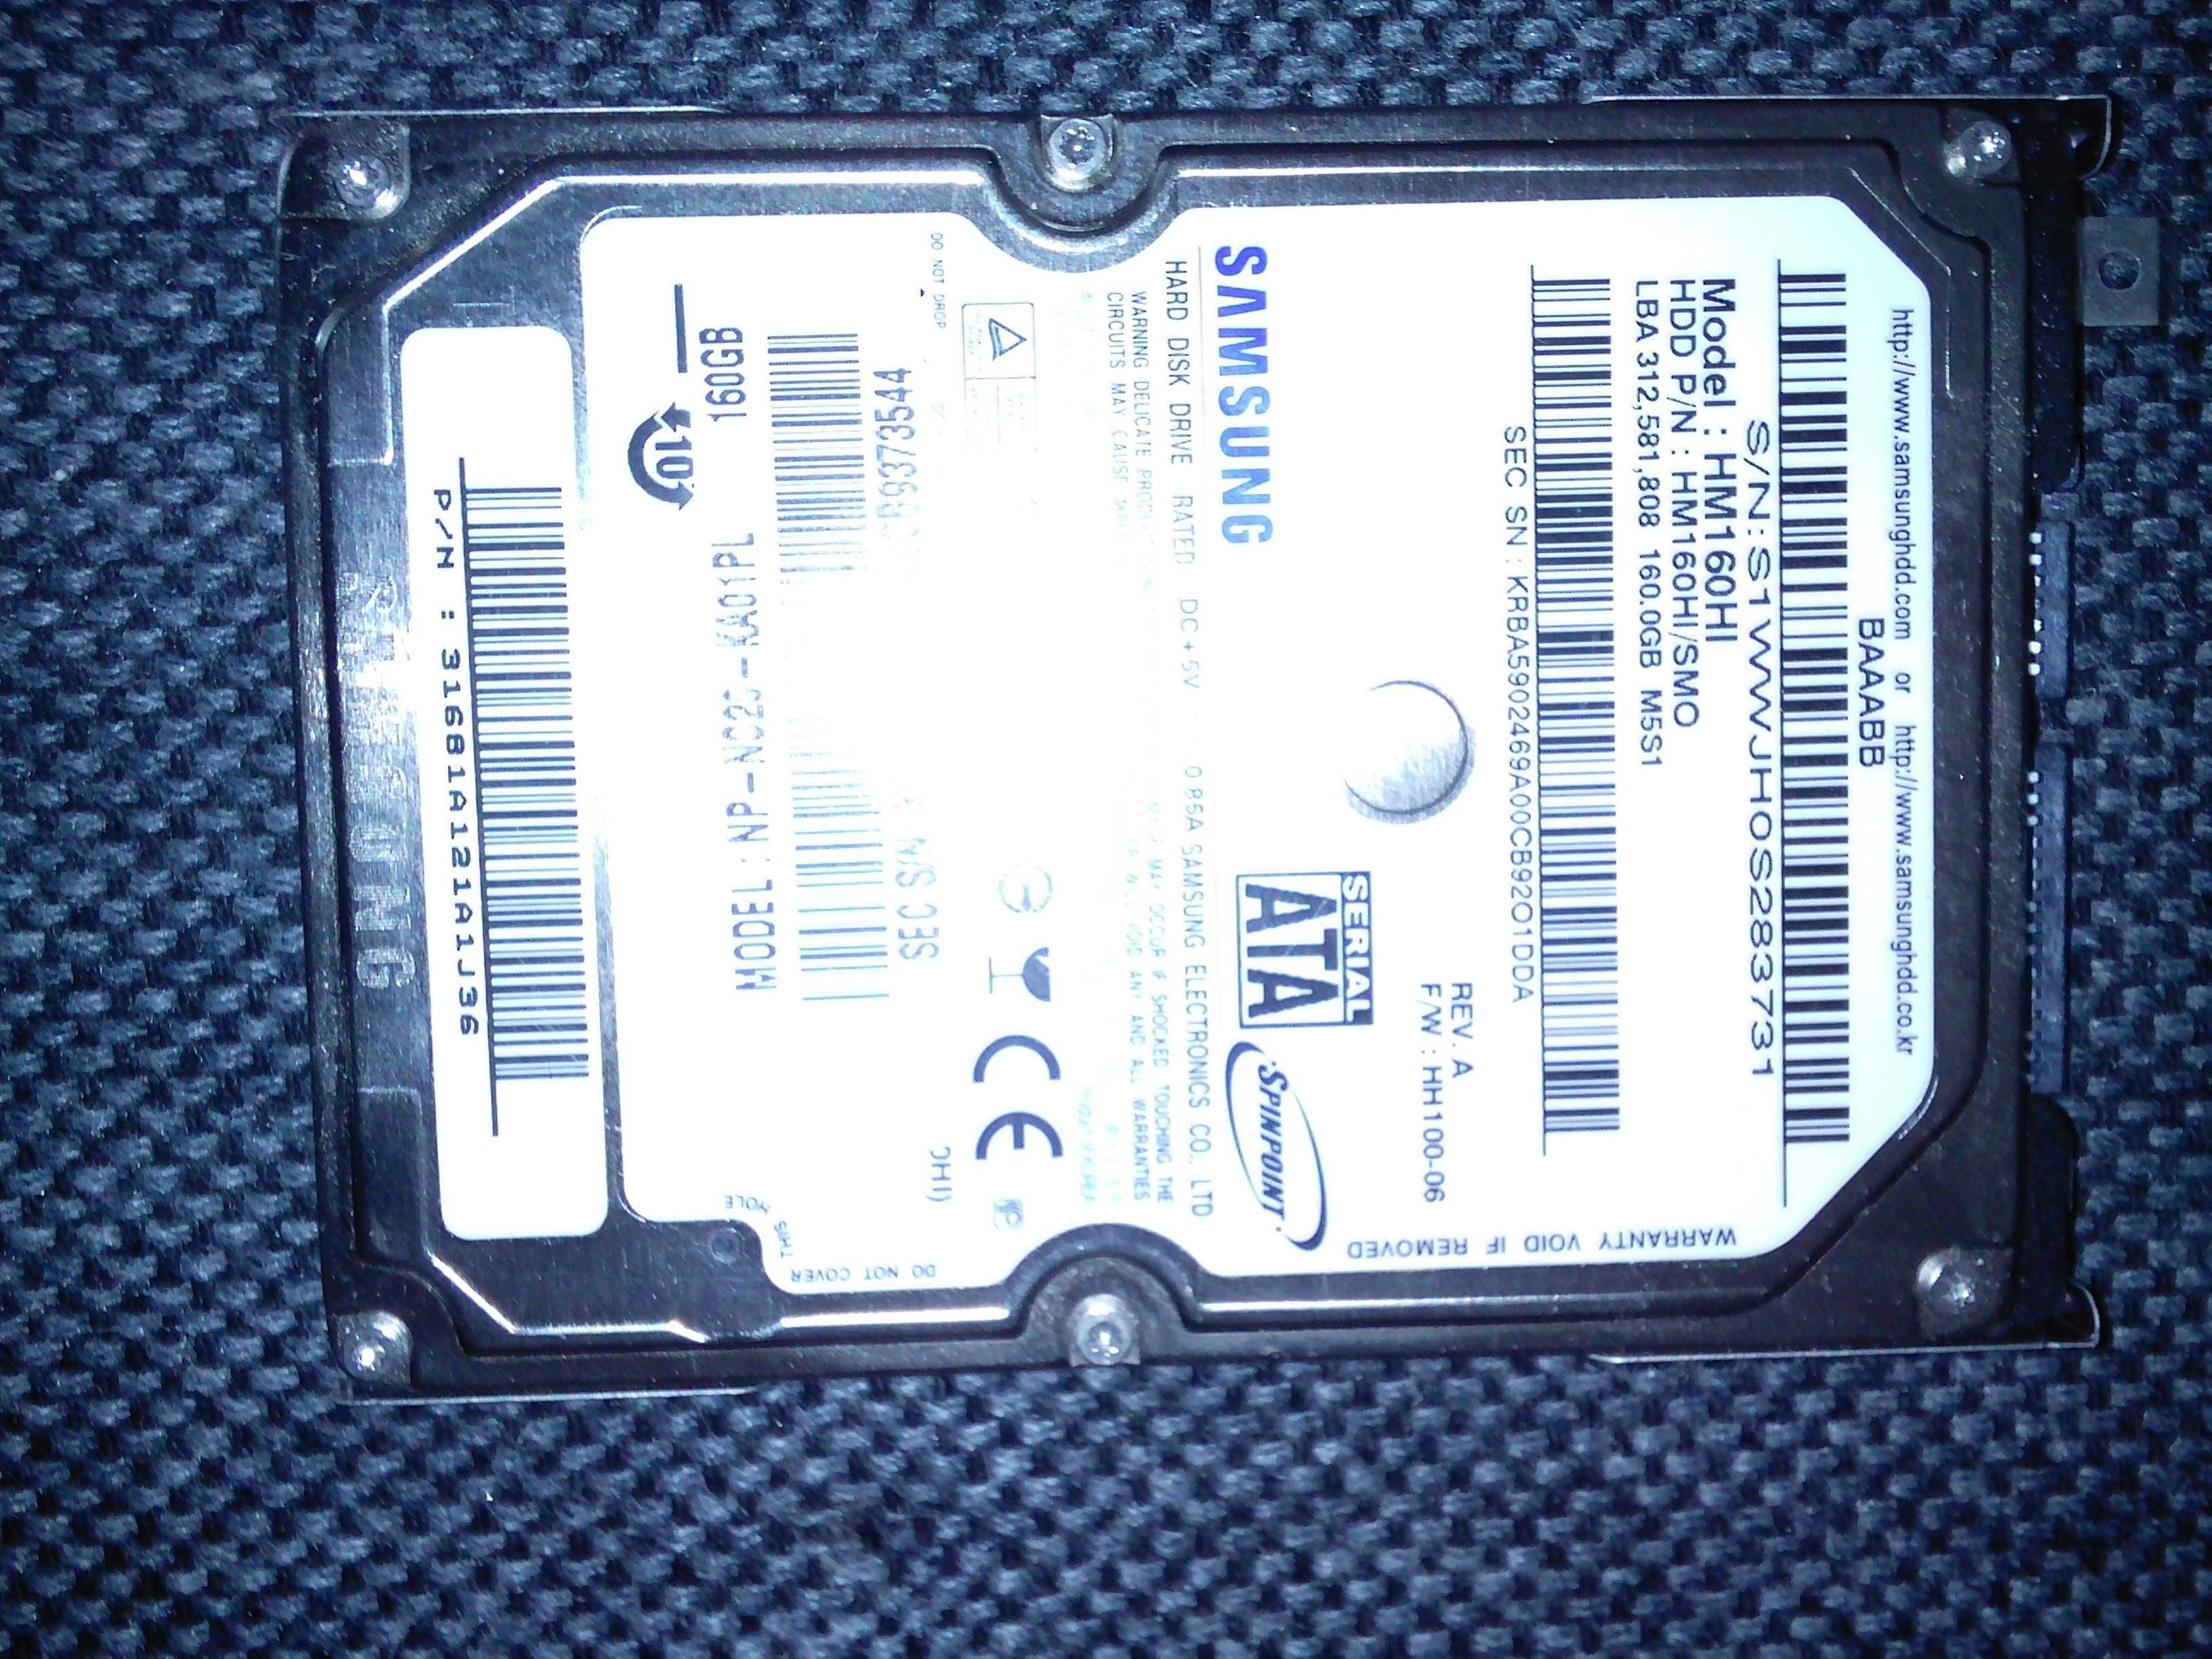 Dysk twardy Samsung HM160HI 160GB SATA 2,5"